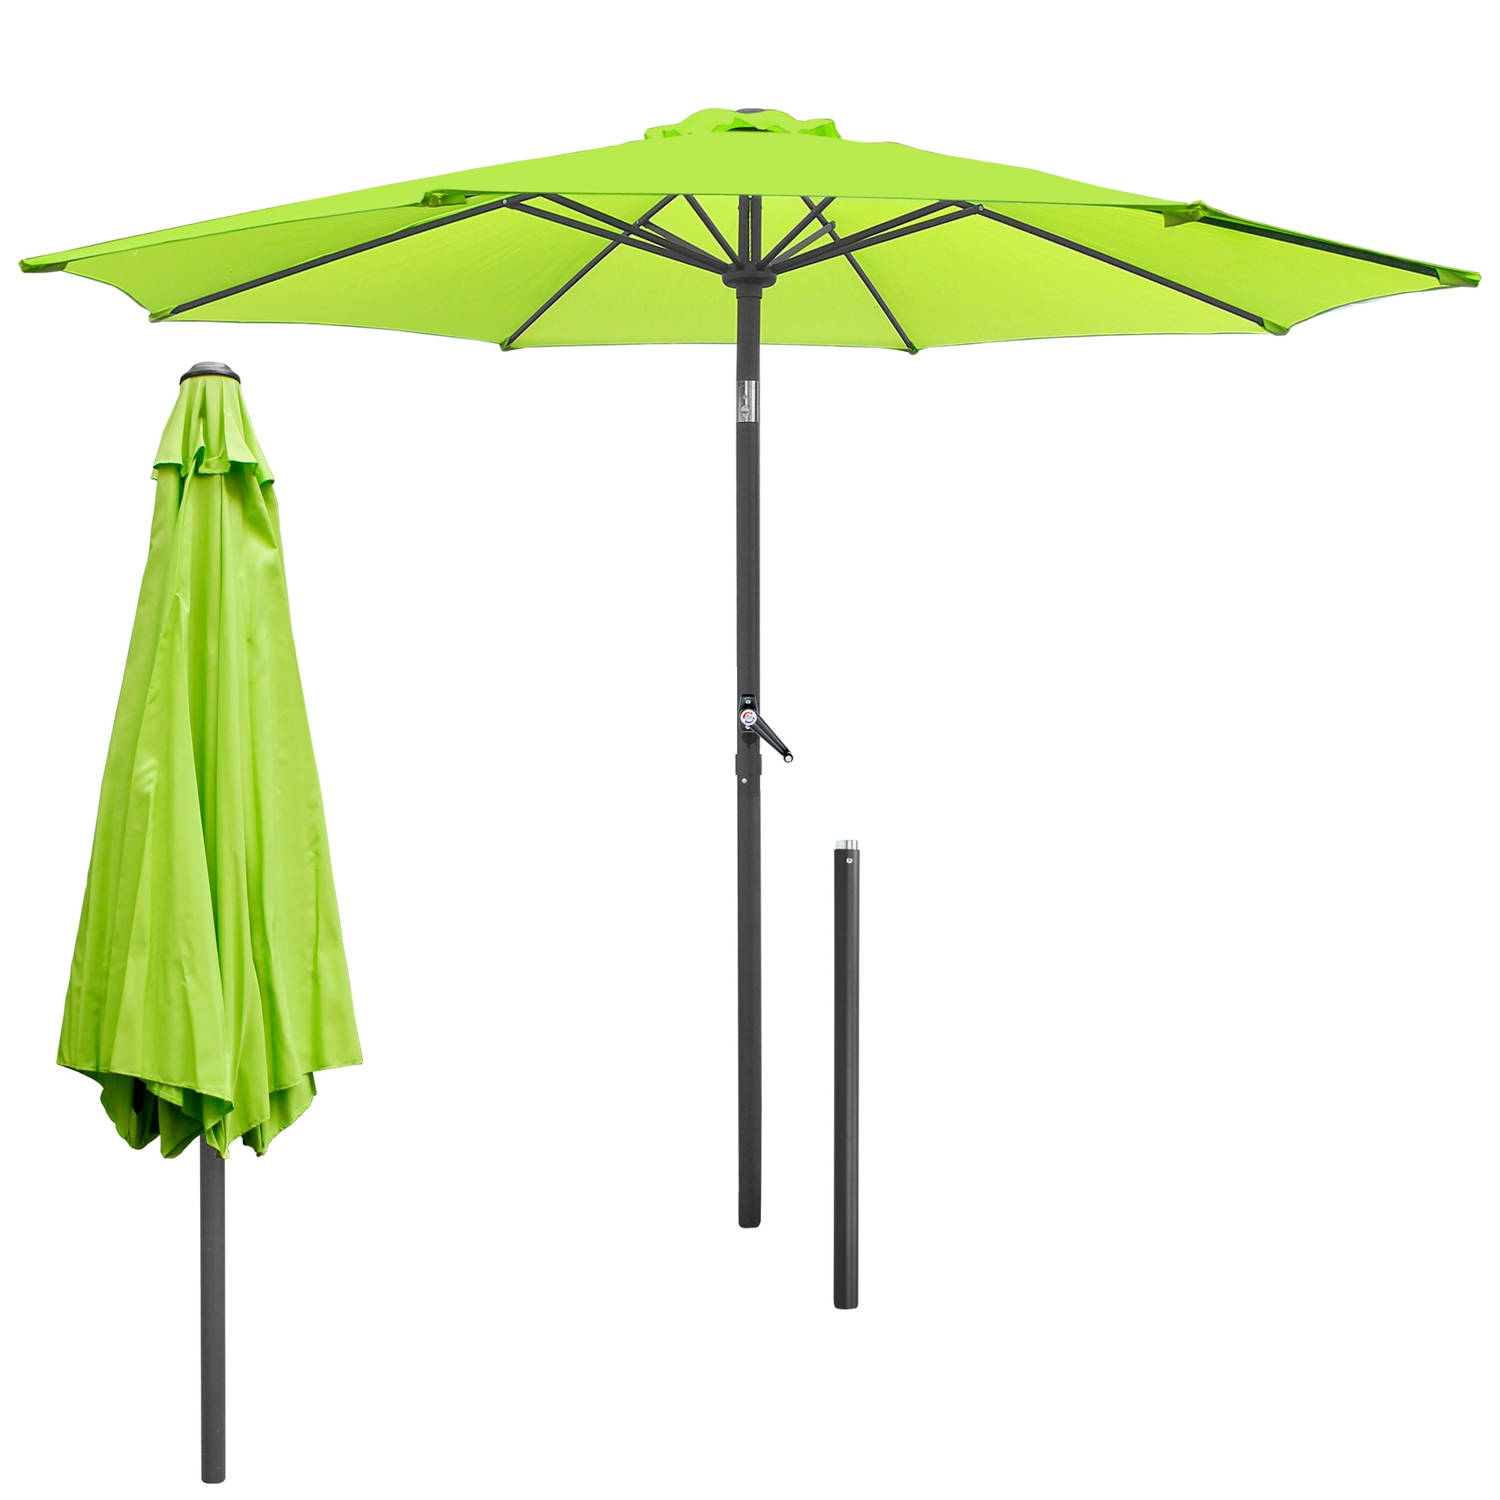 Parasol met slinger, groen, Ø 300 cm, gemaakt van aluminium en polyester